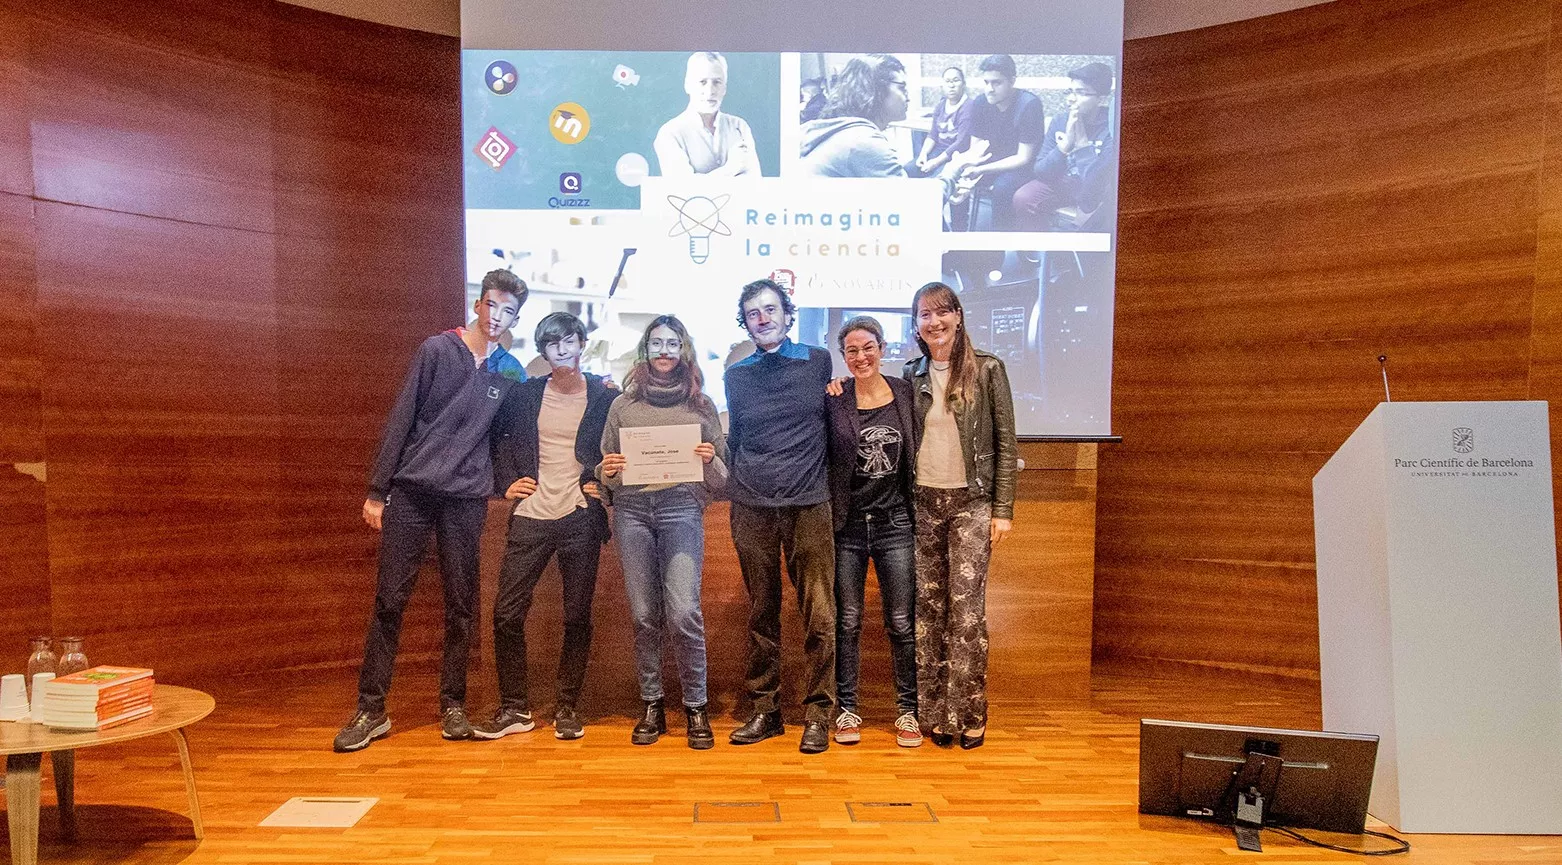 Ganadores Reimagina la ciencia Barcelona